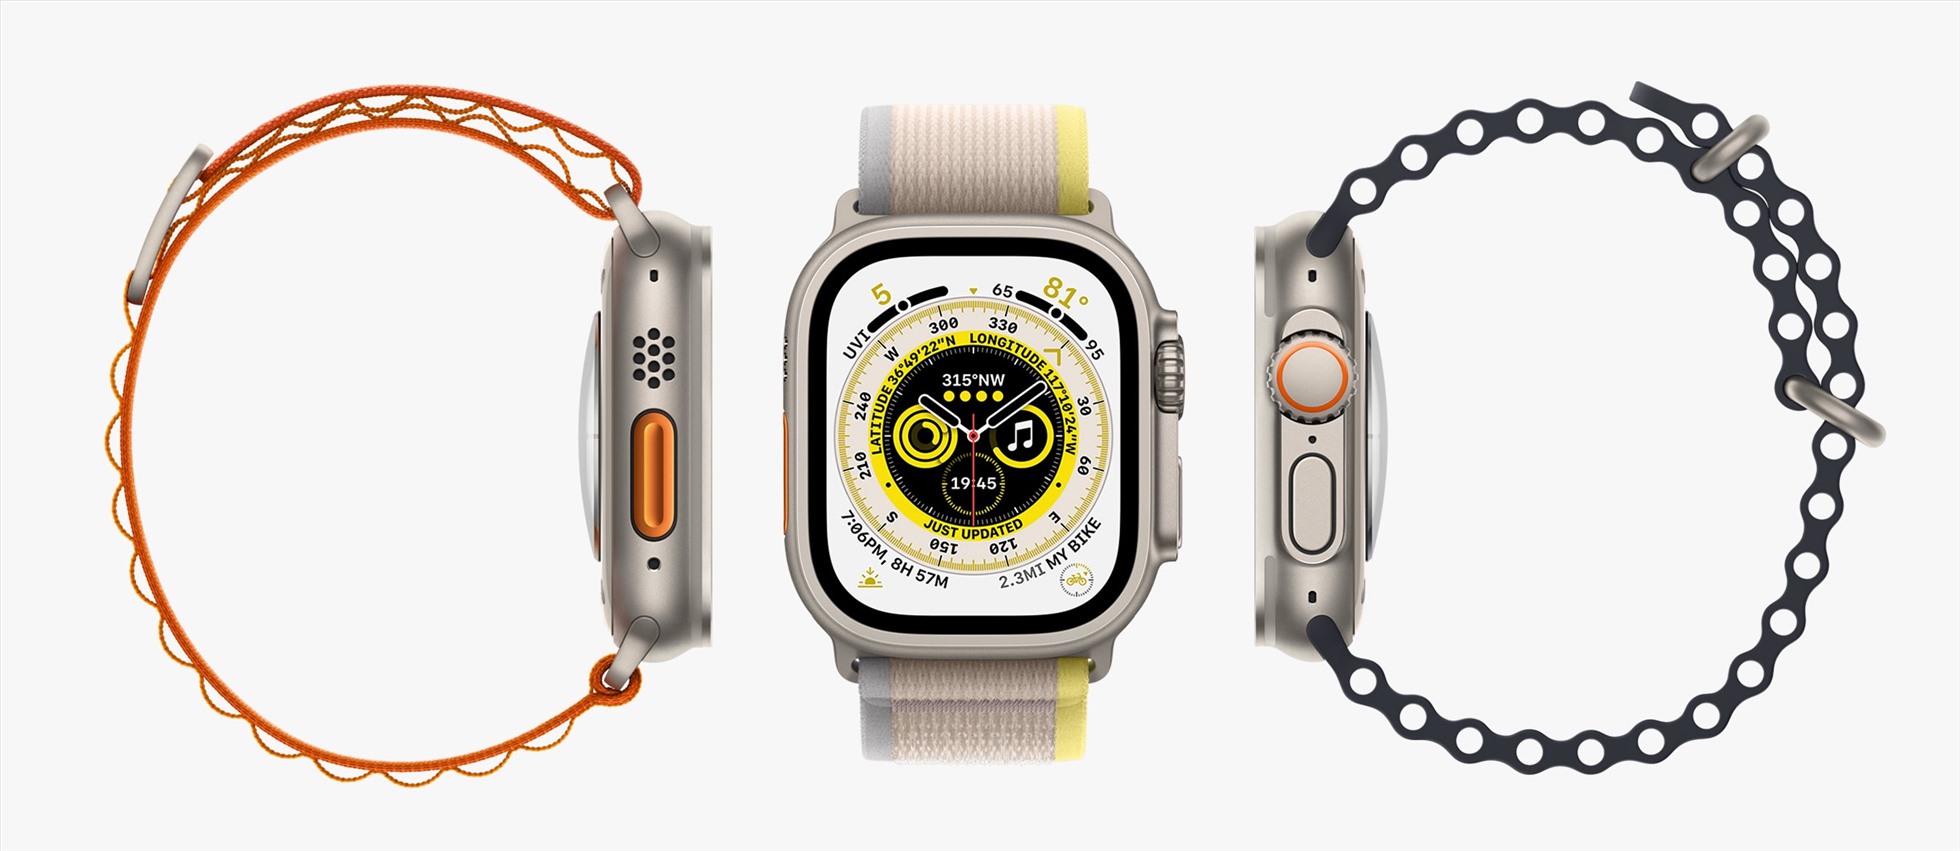 Apple Watch được thiết kế để giúp người dùng theo dõi các hoạt động cơ thể. Ảnh: Apple